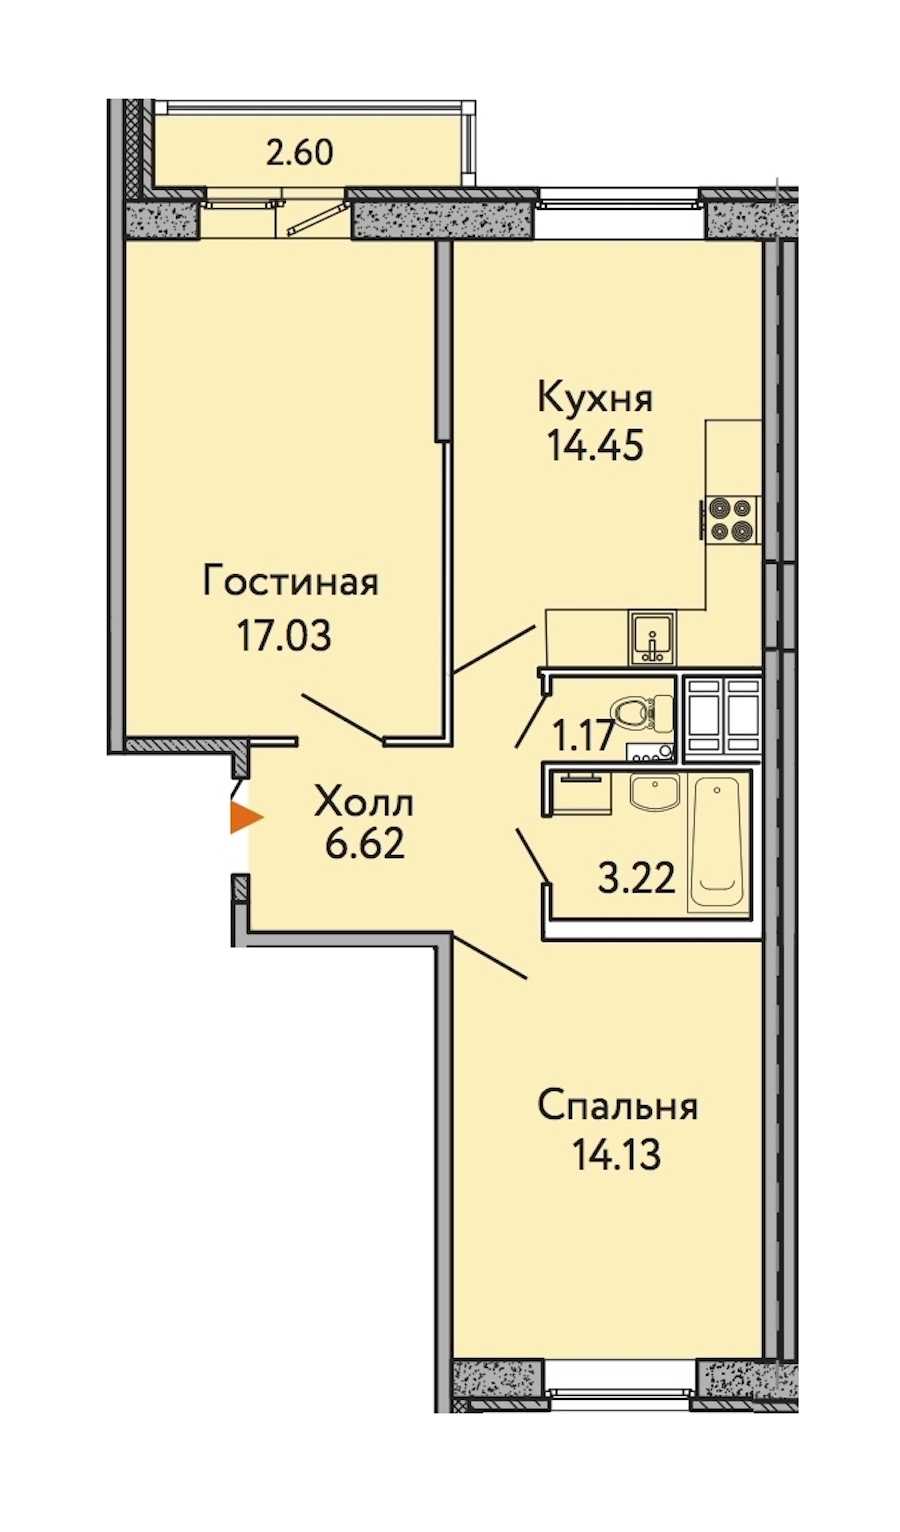 Двухкомнатная квартира в : площадь 57.41 м2 , этаж: 4 – купить в Санкт-Петербурге